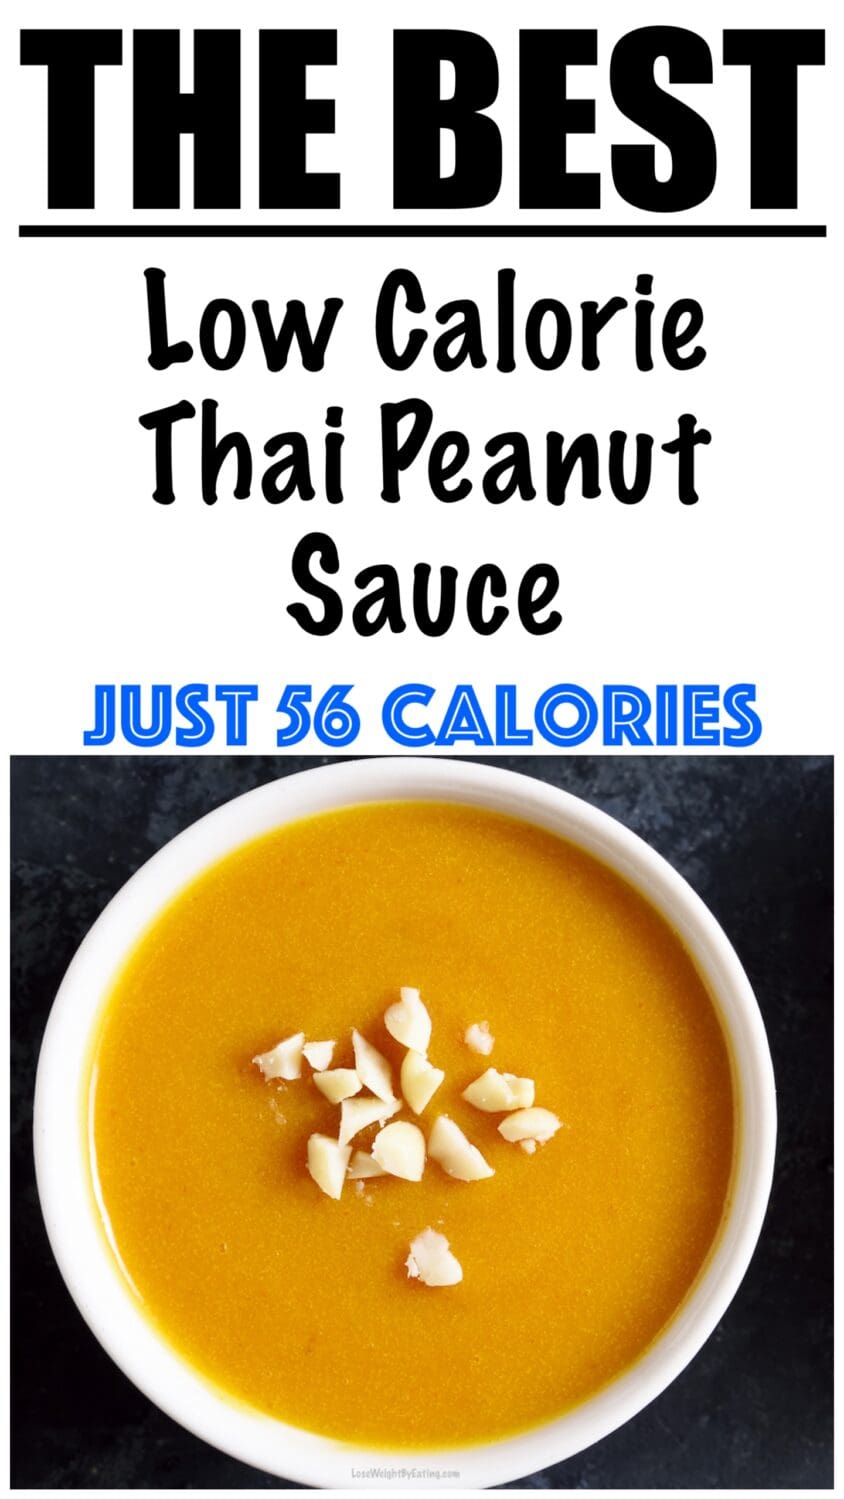 Low Calorie Peanut Sauce Recipe